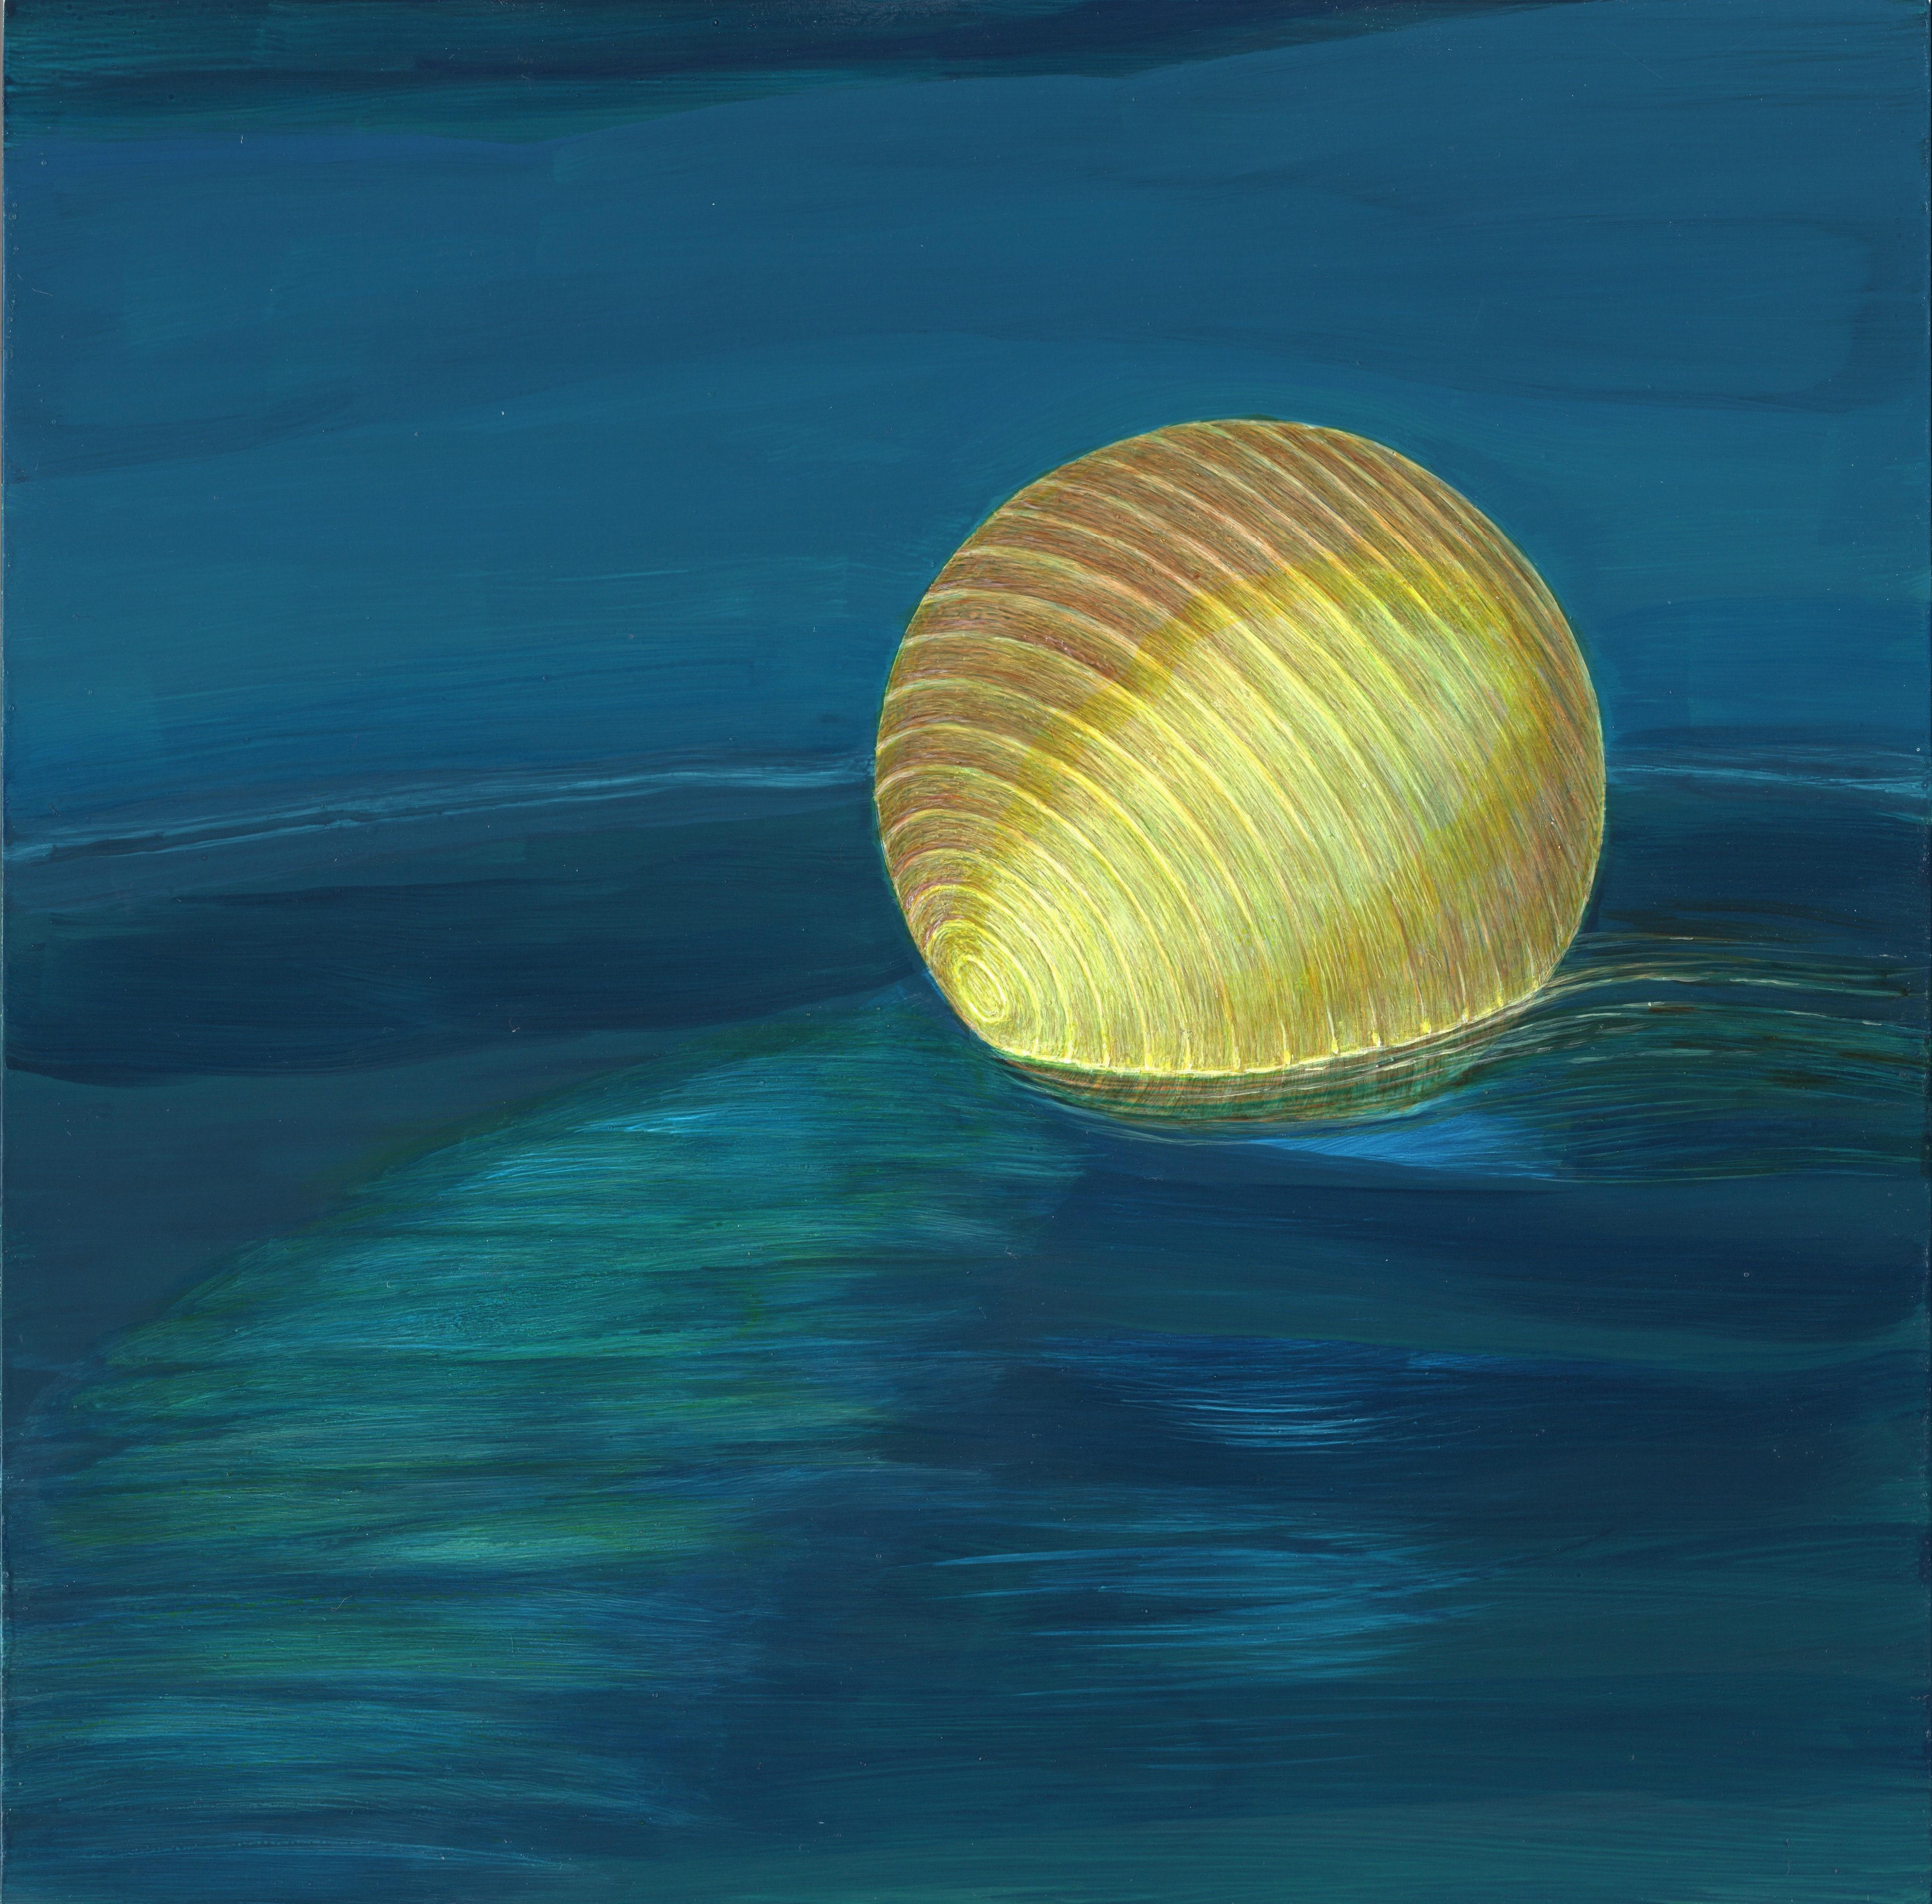 Ocean Rest - Illuminated Paper Lantern on Vivid Blue Water, Acrylic on Panel